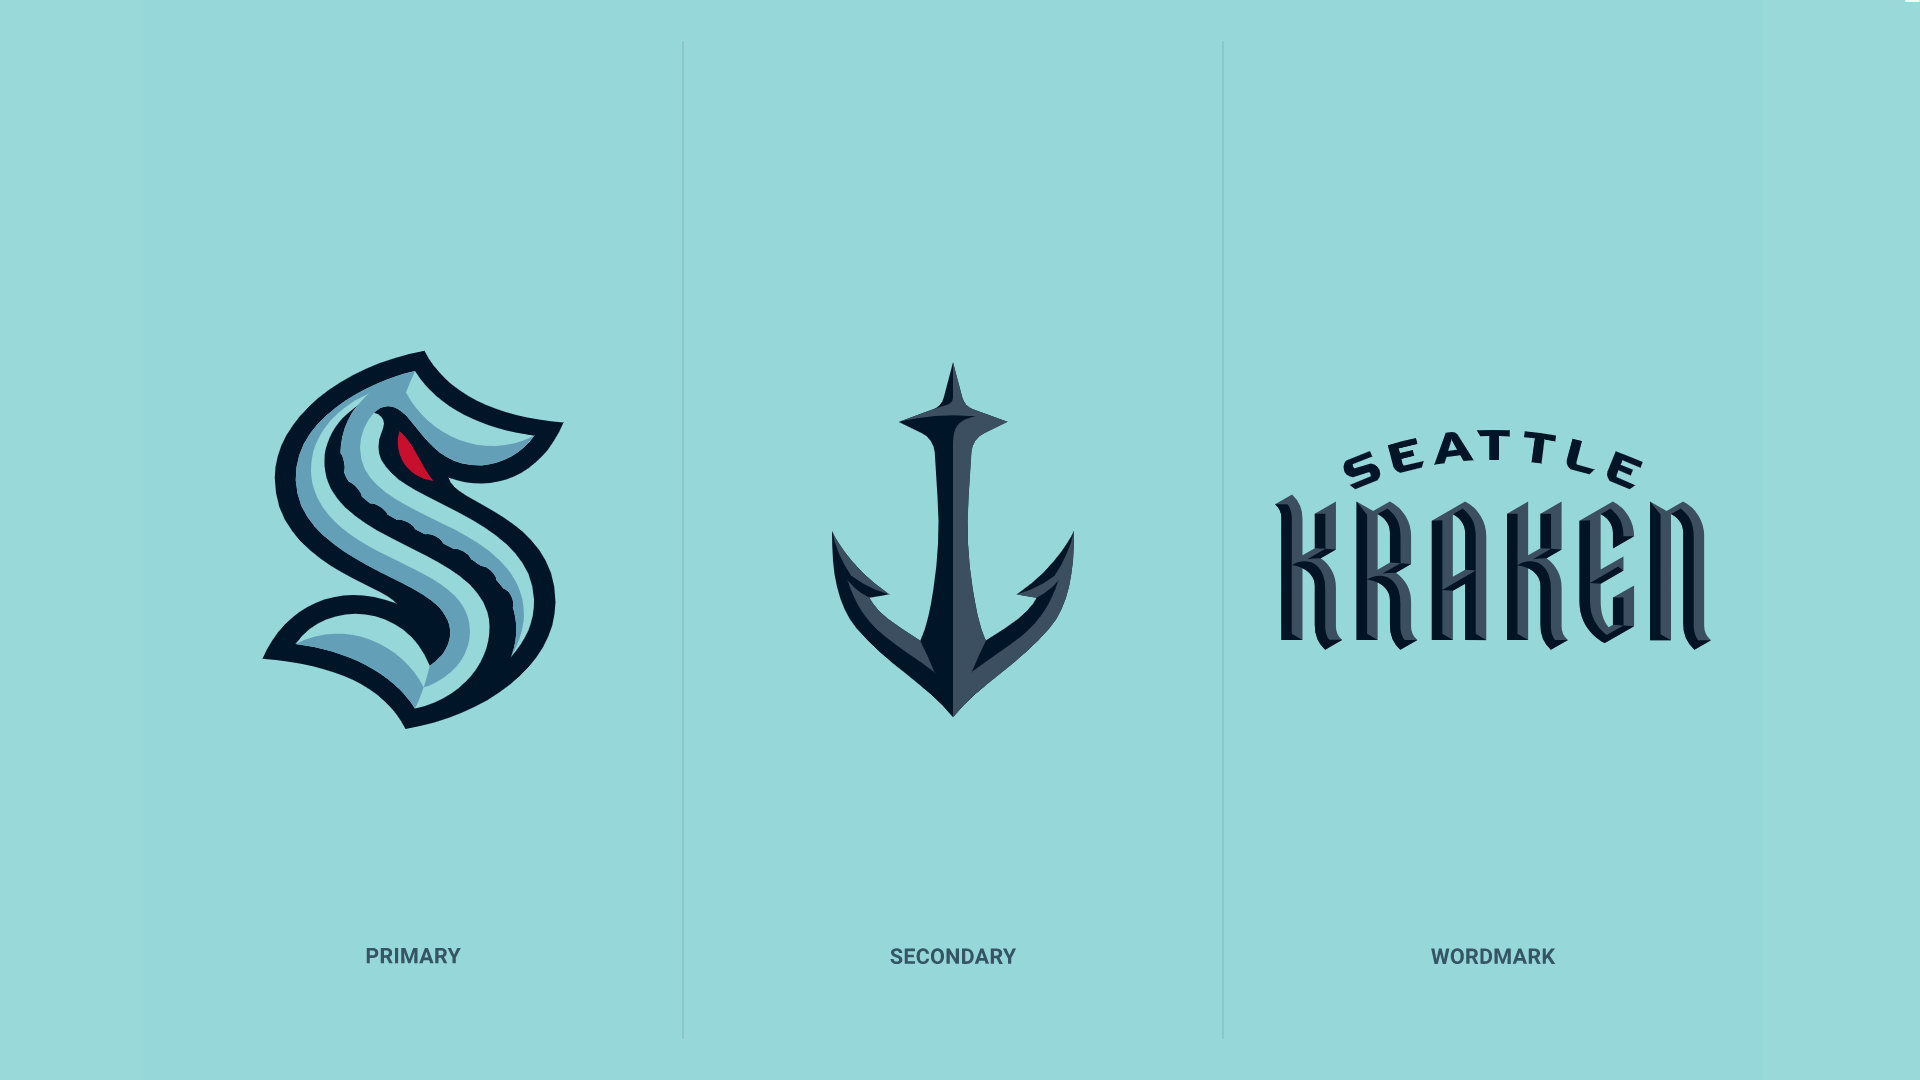 Kraken Wallpapers S Anchor Release the Kraken and Combined variants   rSeattleKraken